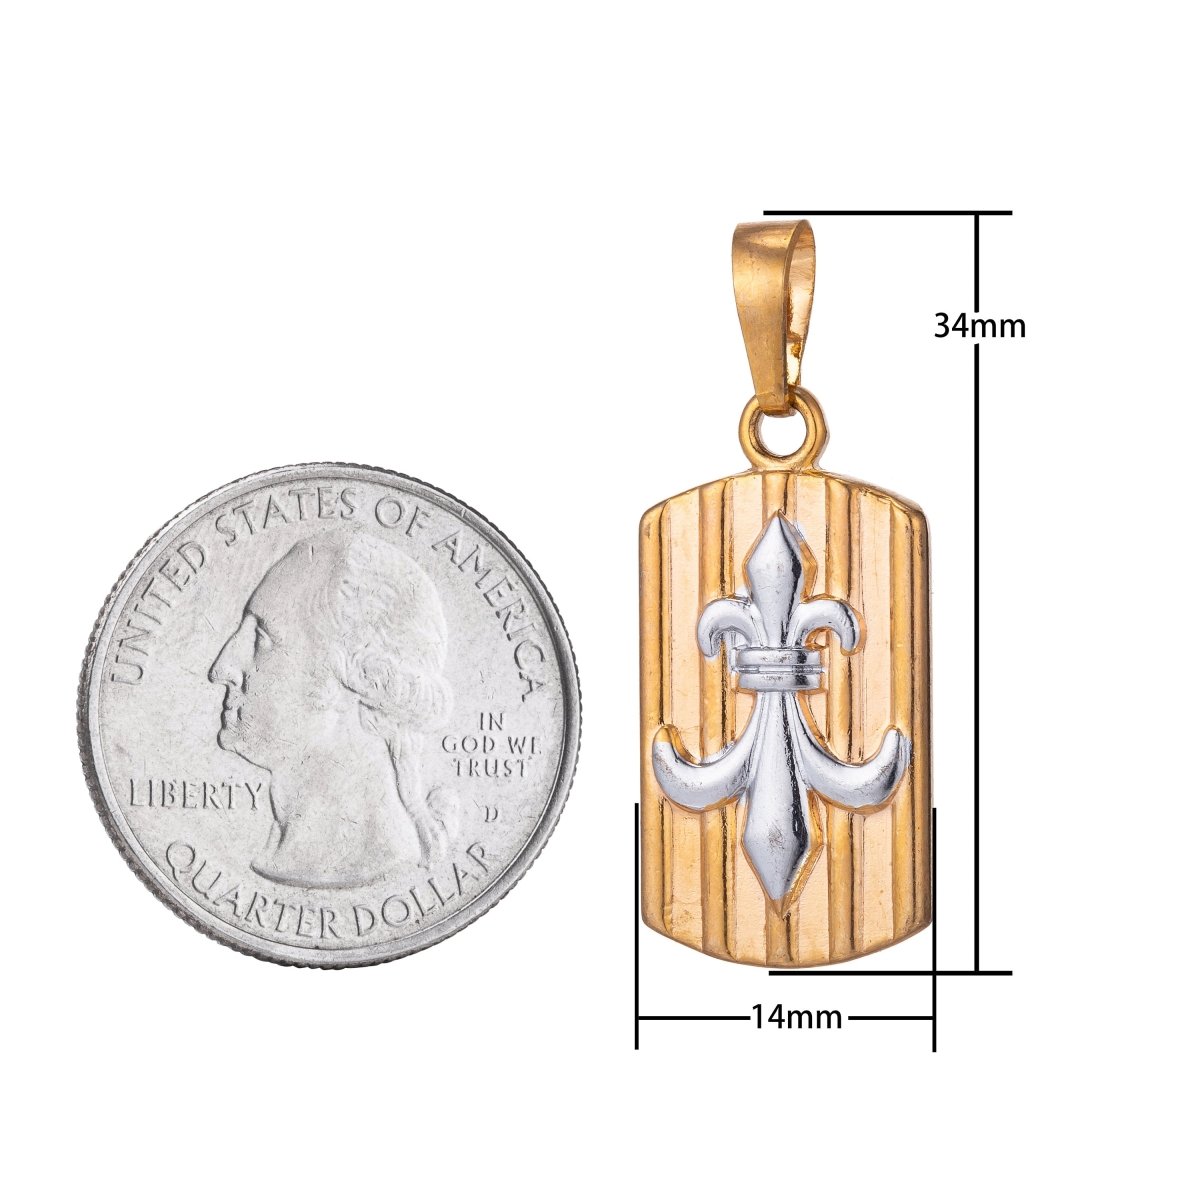 3D 18K Gold Petite Fleur de Lis Charm New Orleans Saints Logo Pendant Lousiana For Layering Necklace Gift Making Military Tag Pendant H-857 - DLUXCA